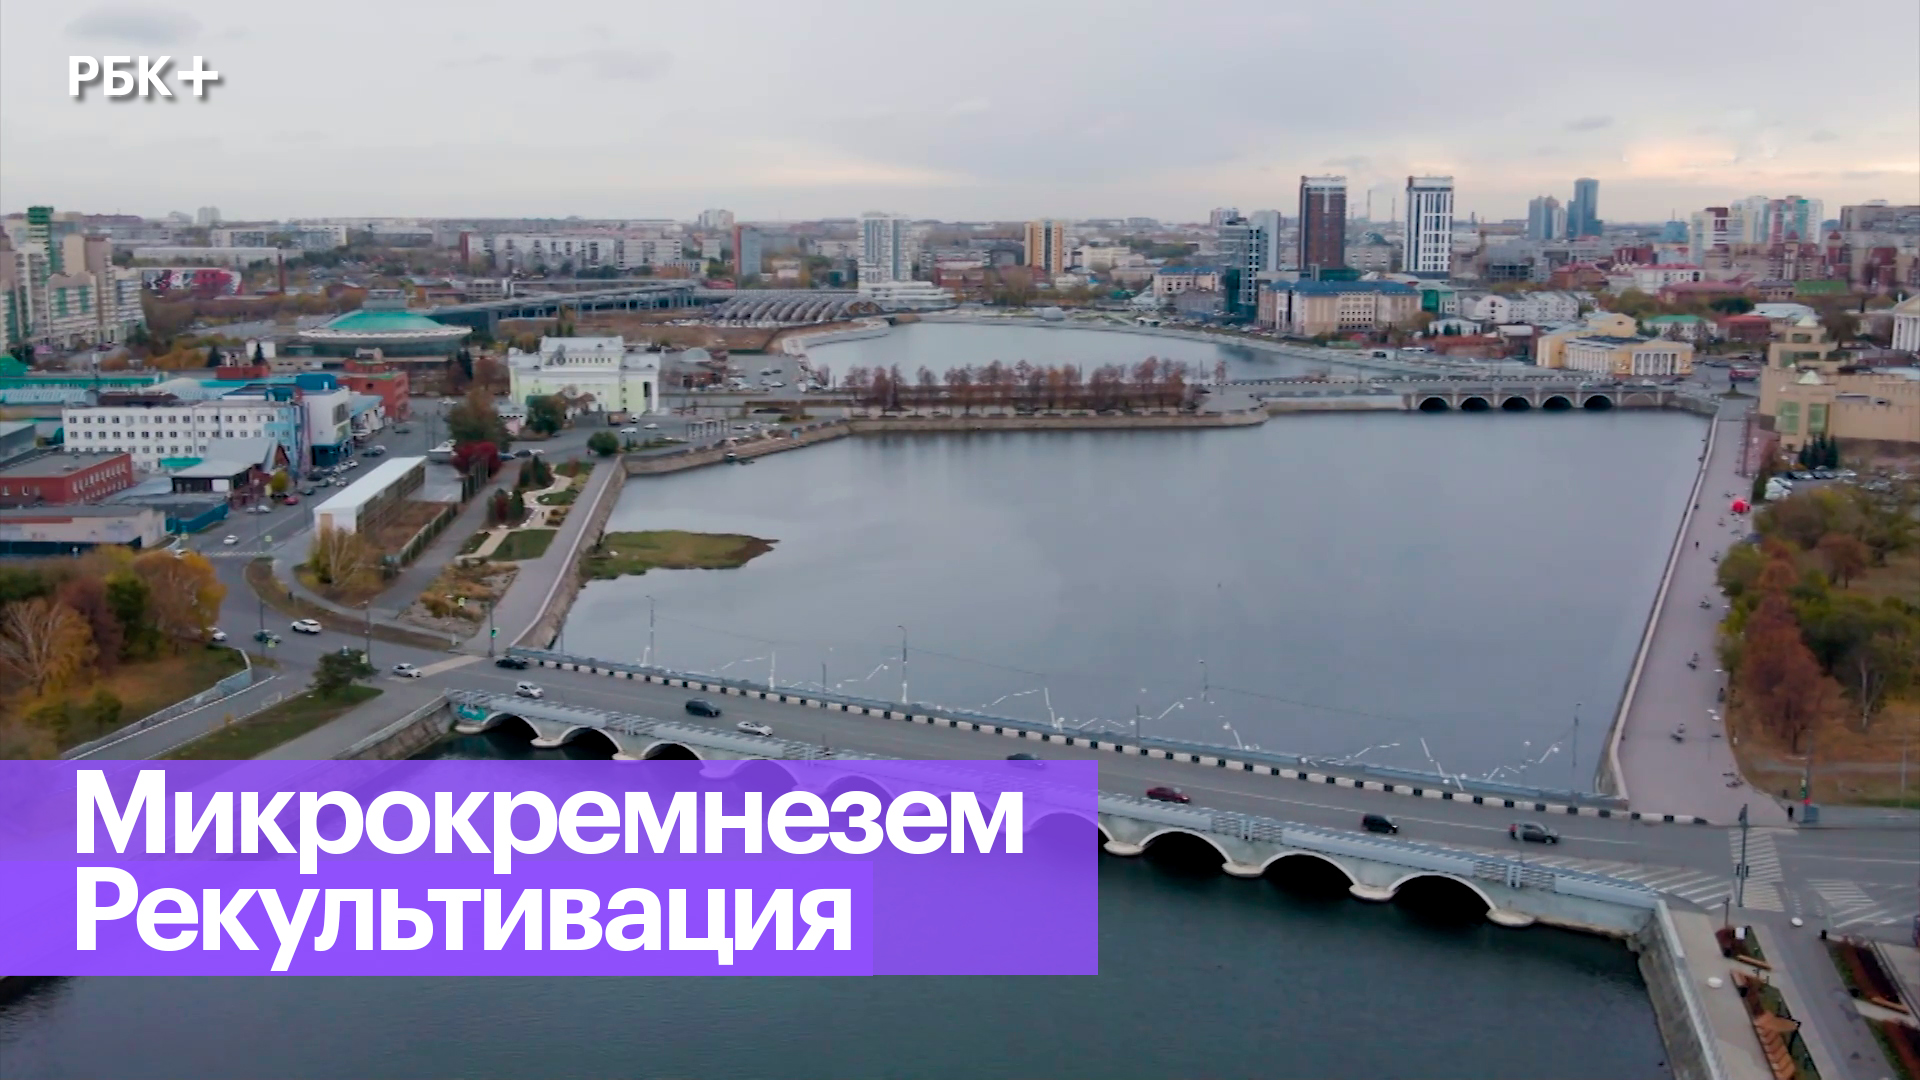 Челябинск: экология и зеленые технологии